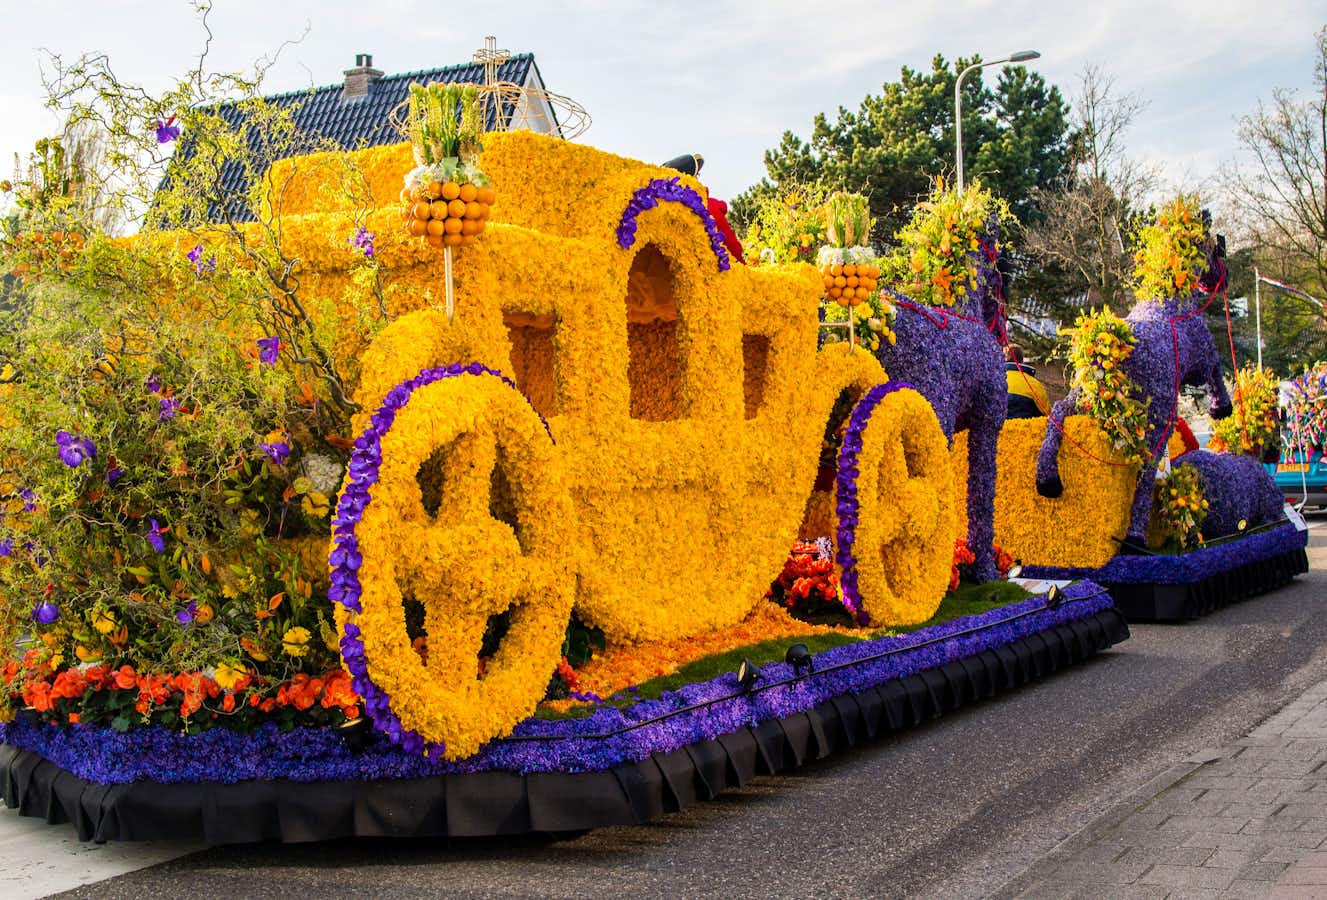 The Zundert Flower Parade